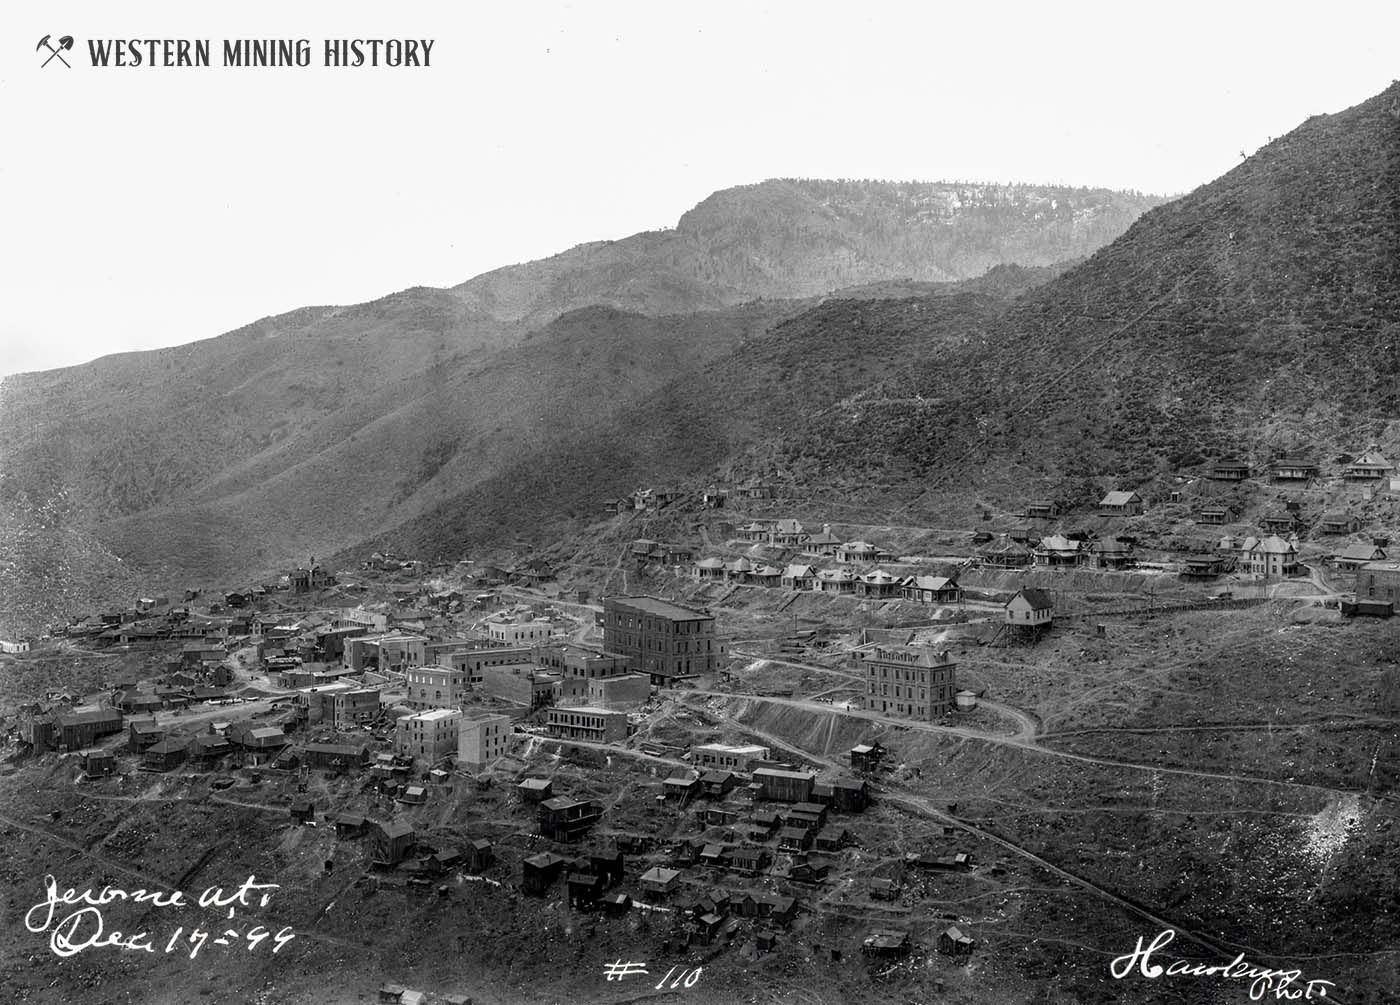 Jerome, Arizona December 17, 1899